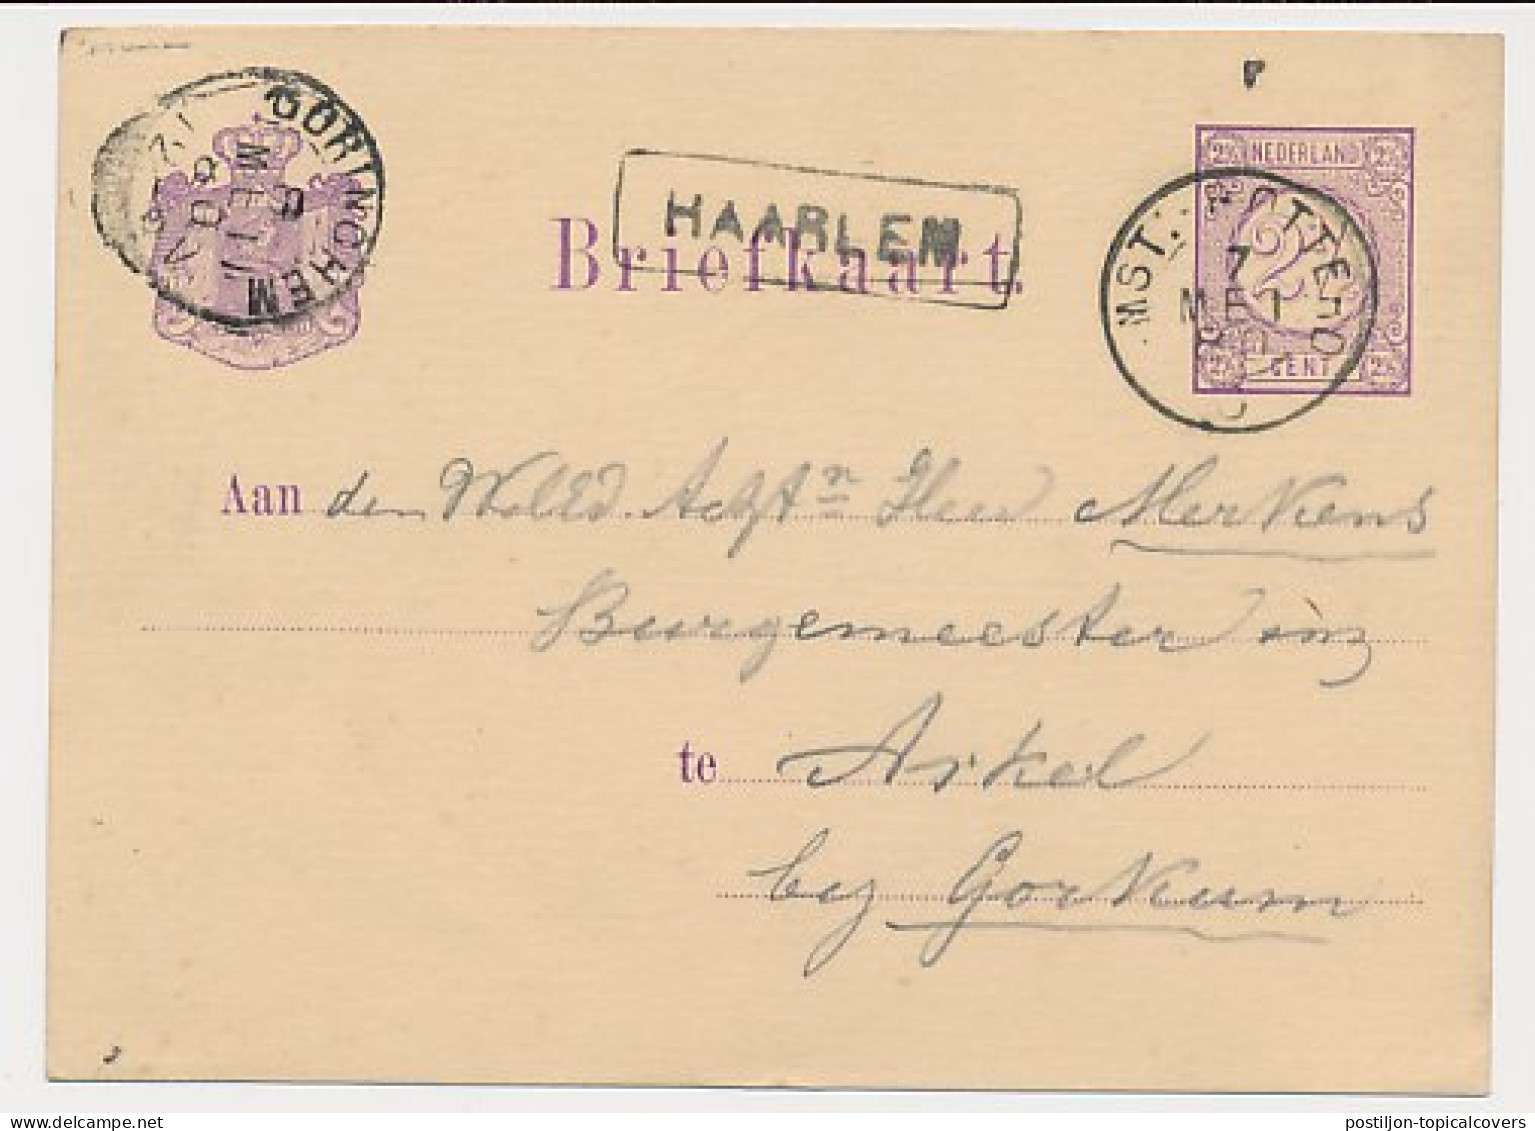 Trein Haltestempel Haarlem 1880 - Lettres & Documents